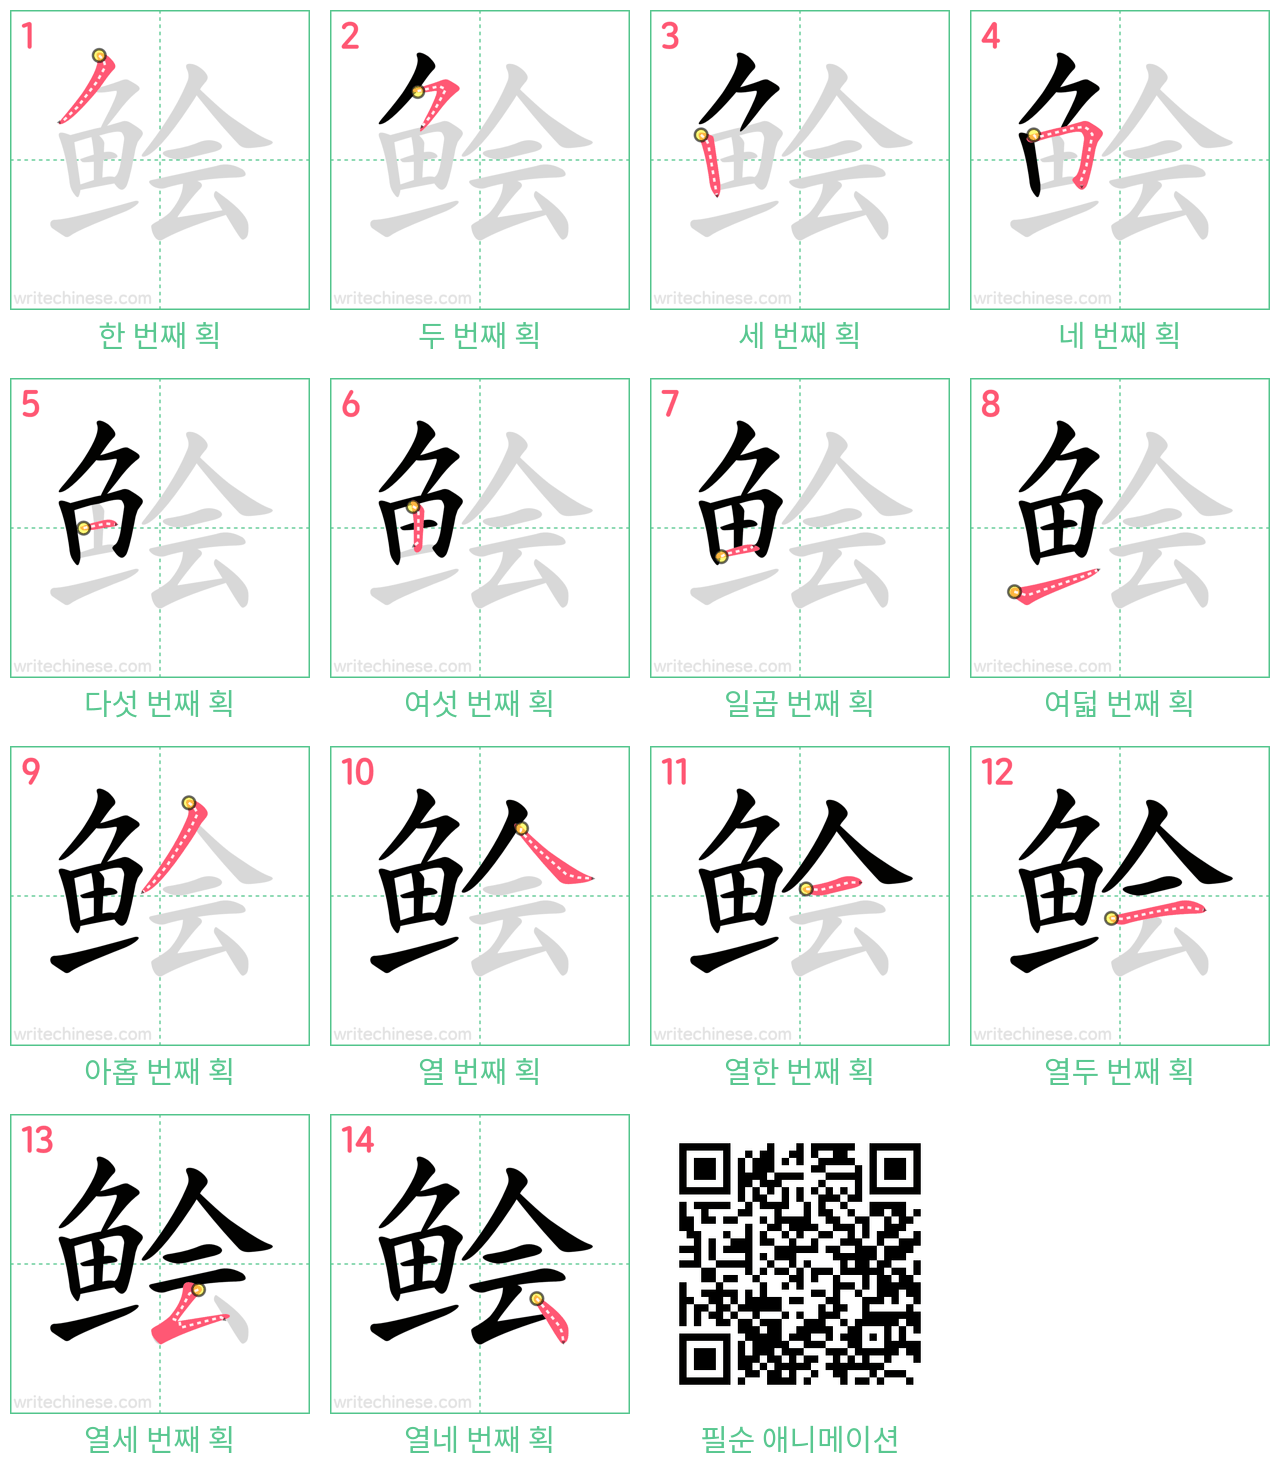 鲙 step-by-step stroke order diagrams